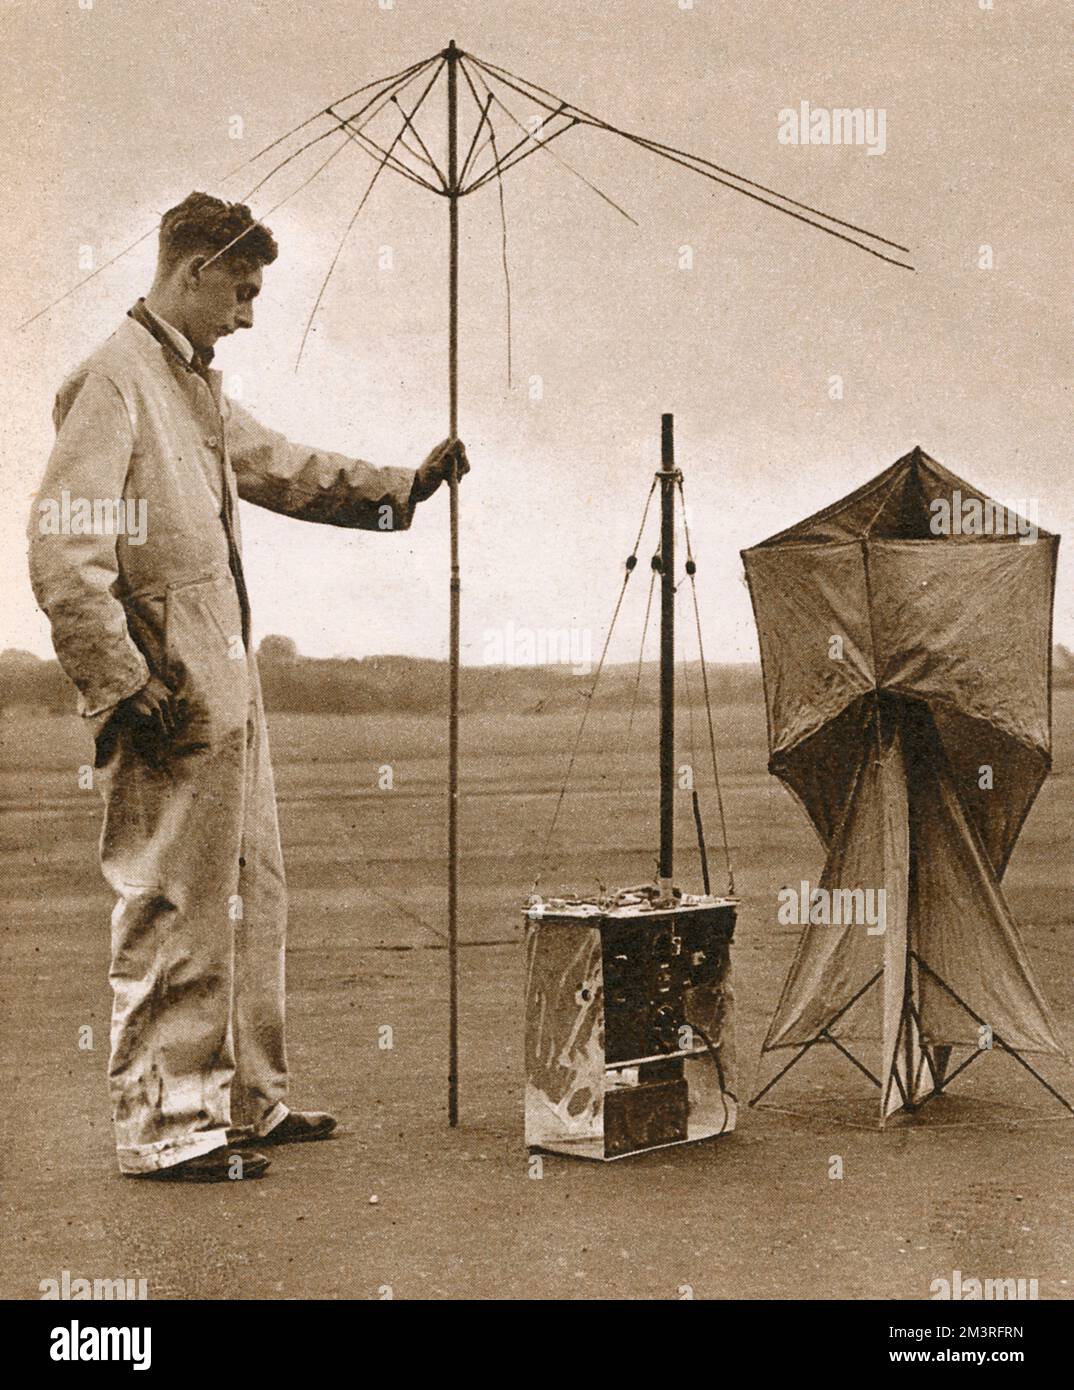 Un homme examine un ensemble radio d'un avion Heinkel III capturé. Il peut être utilisé avec une antenne kite ou rod, et fait clignoter un S.O.S automatique sur certaines longueurs d'onde. Date: 1940 Banque D'Images